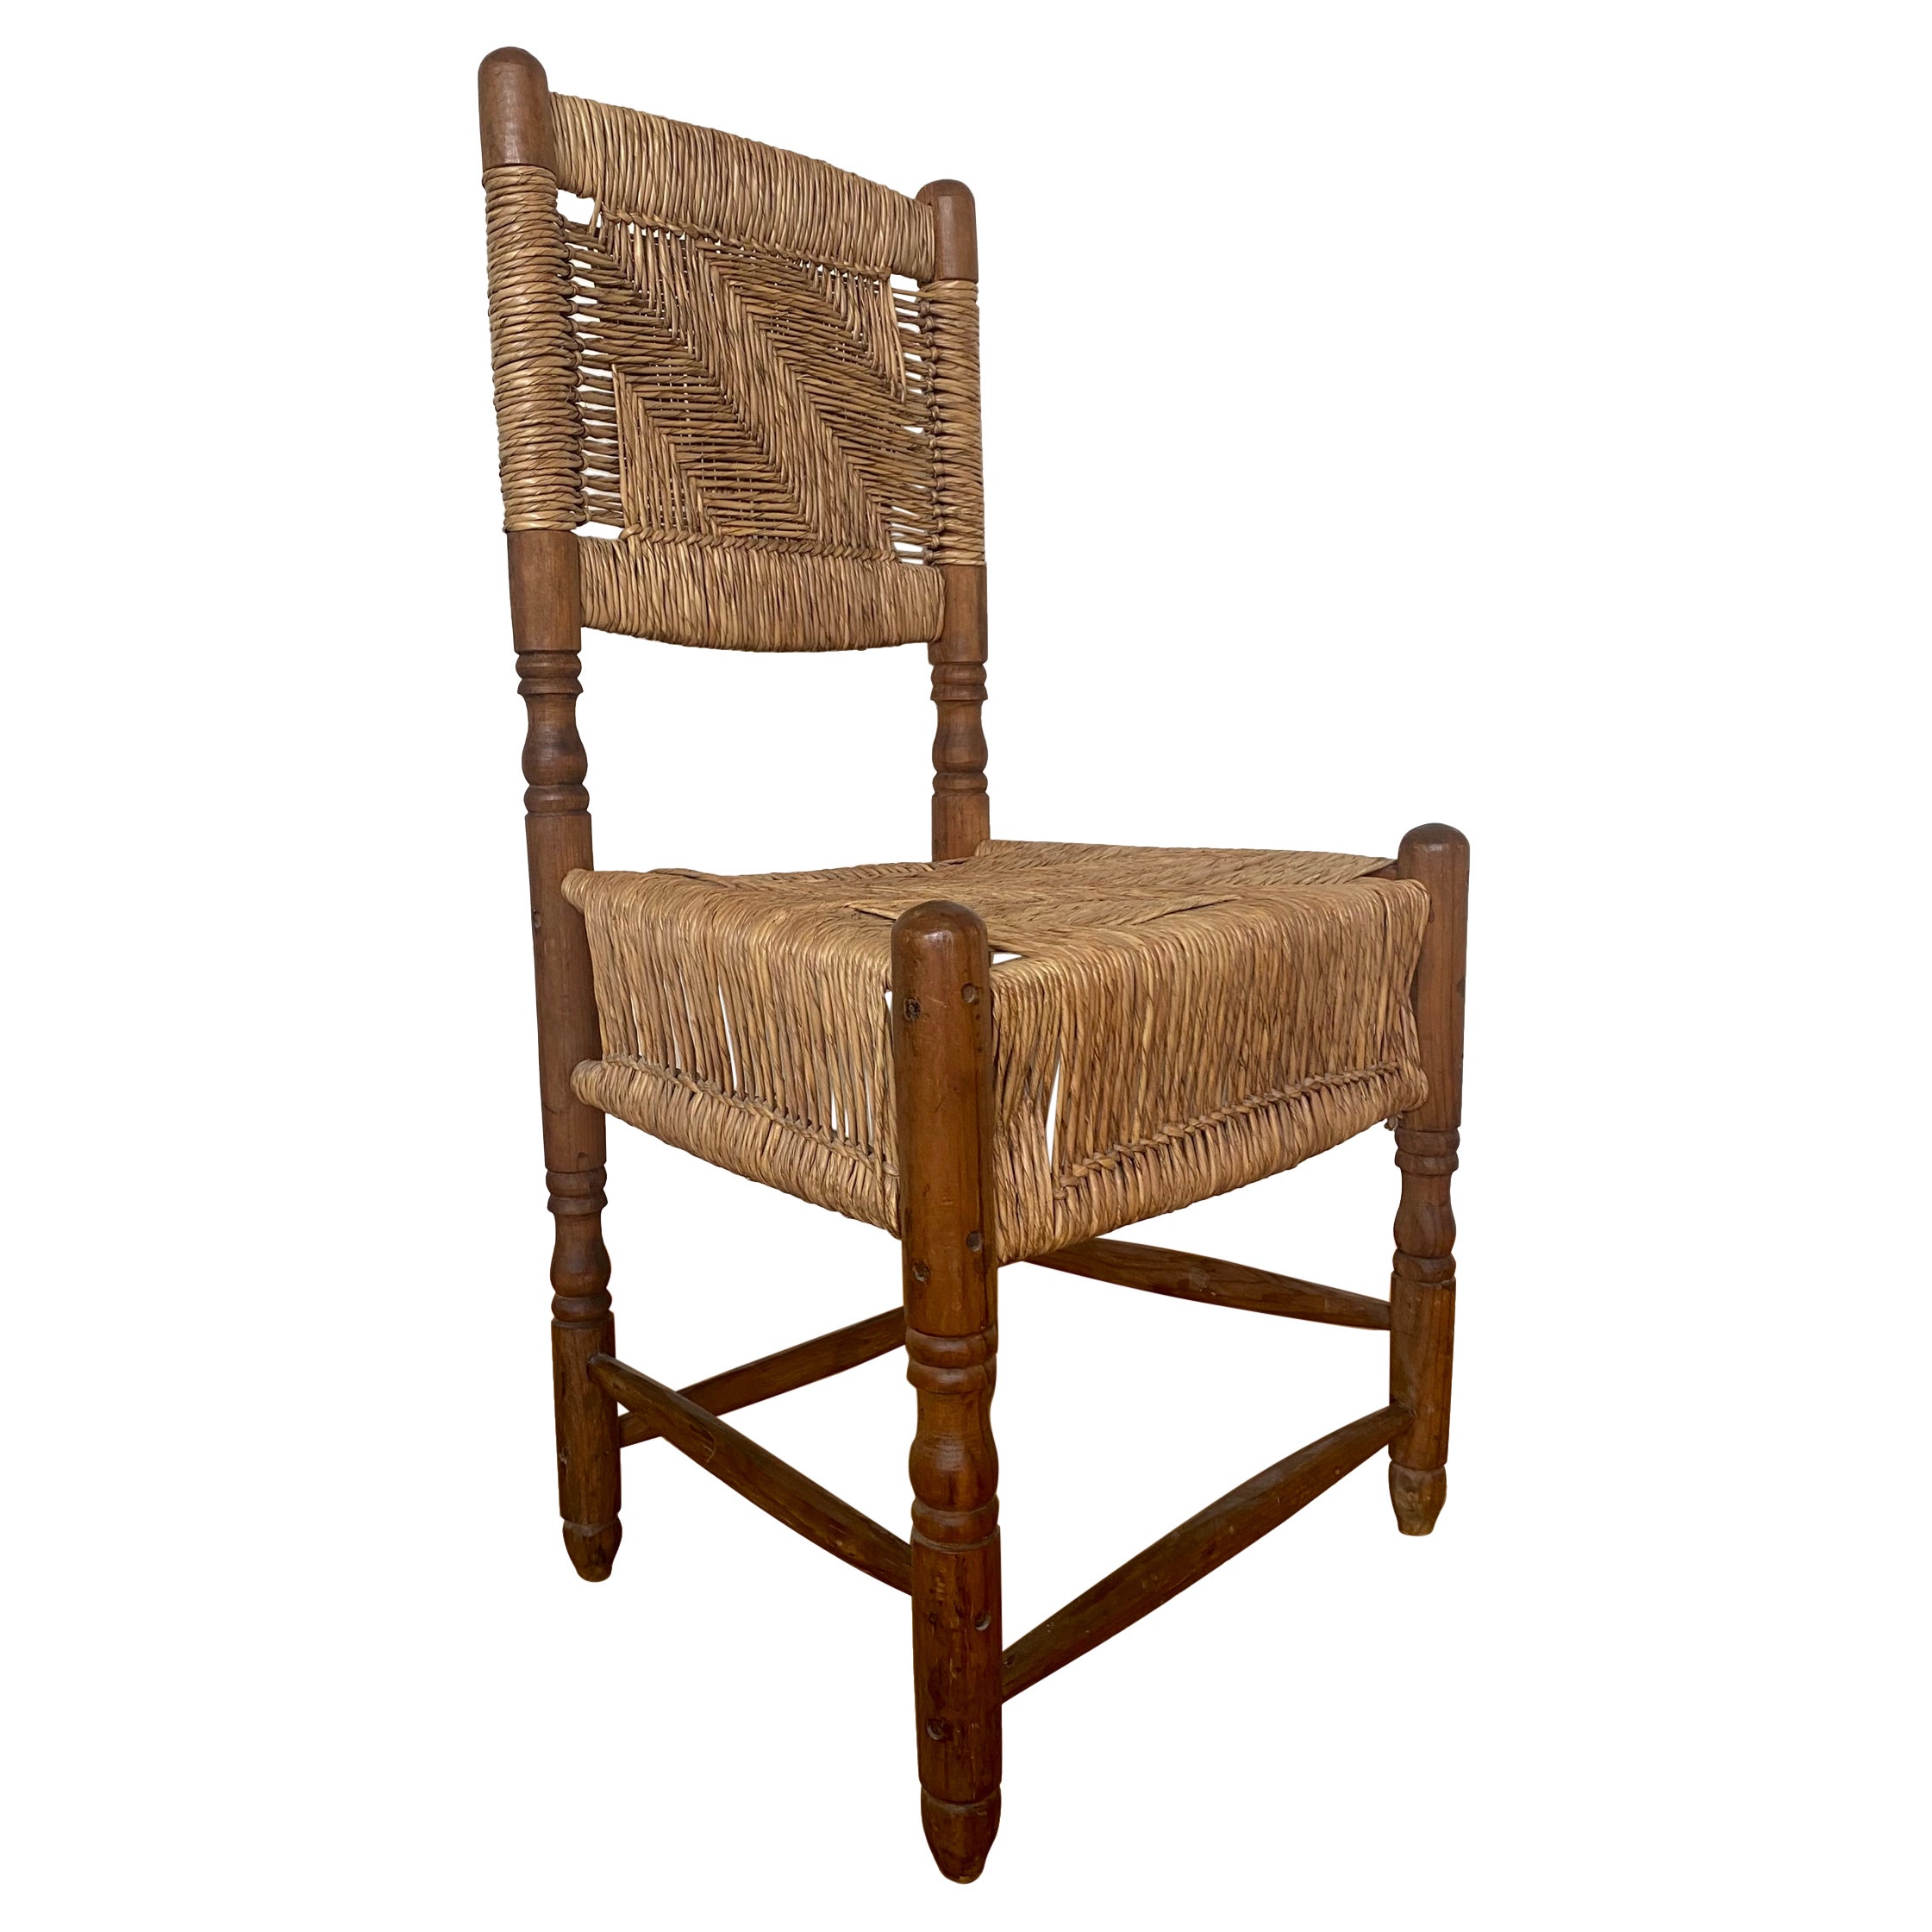 Chaise rustique nord-américaine vintage en bois avec assise tissée.